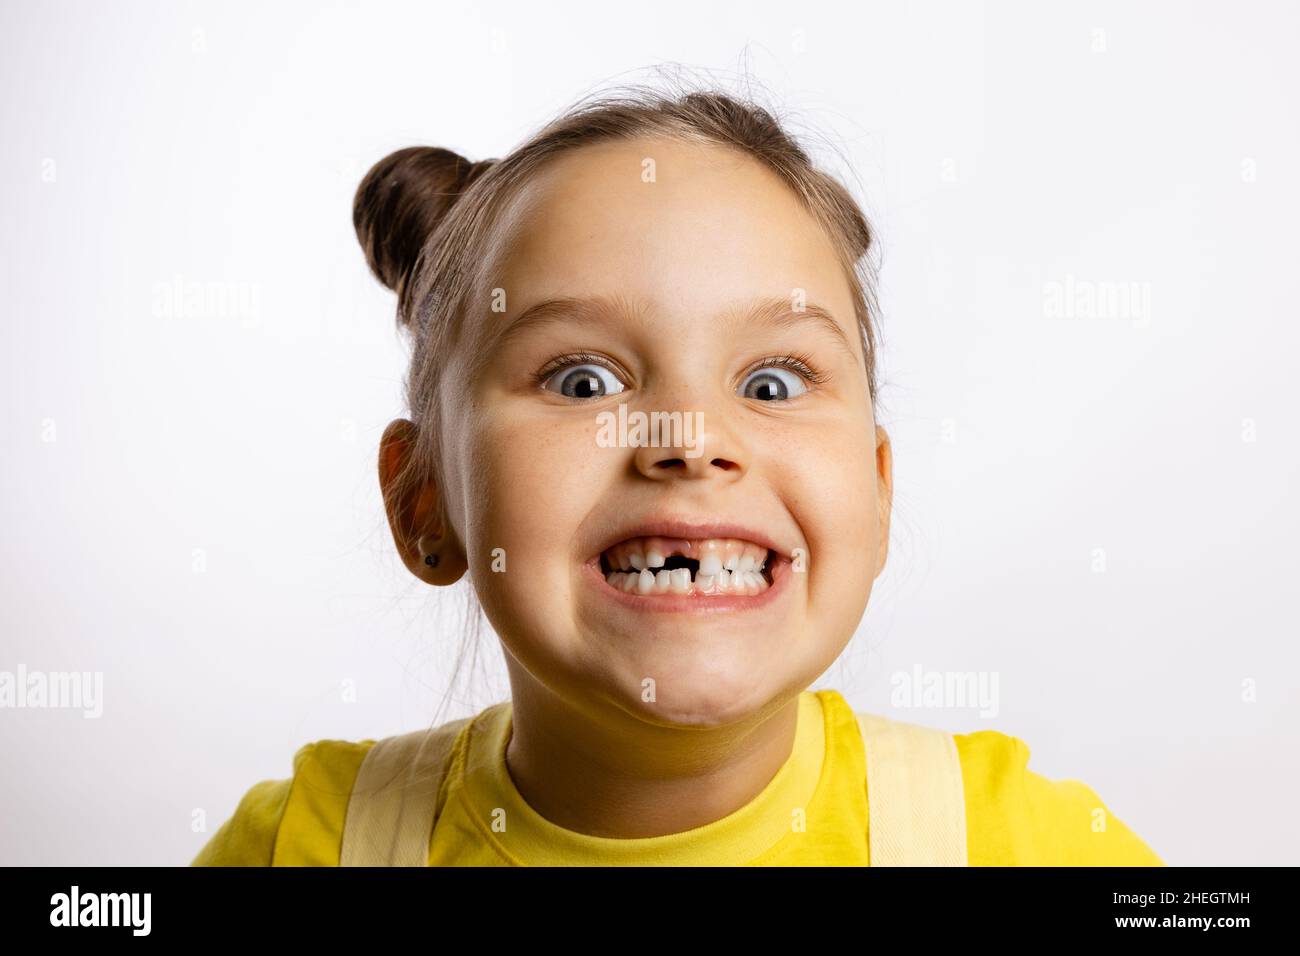 Portrait d'une petite fille montrant une dent de bébé manquante sur le devant et un crazily souriant avec des yeux renflés dans un t-shirt jaune sur fond blanc.Premières dents Banque D'Images